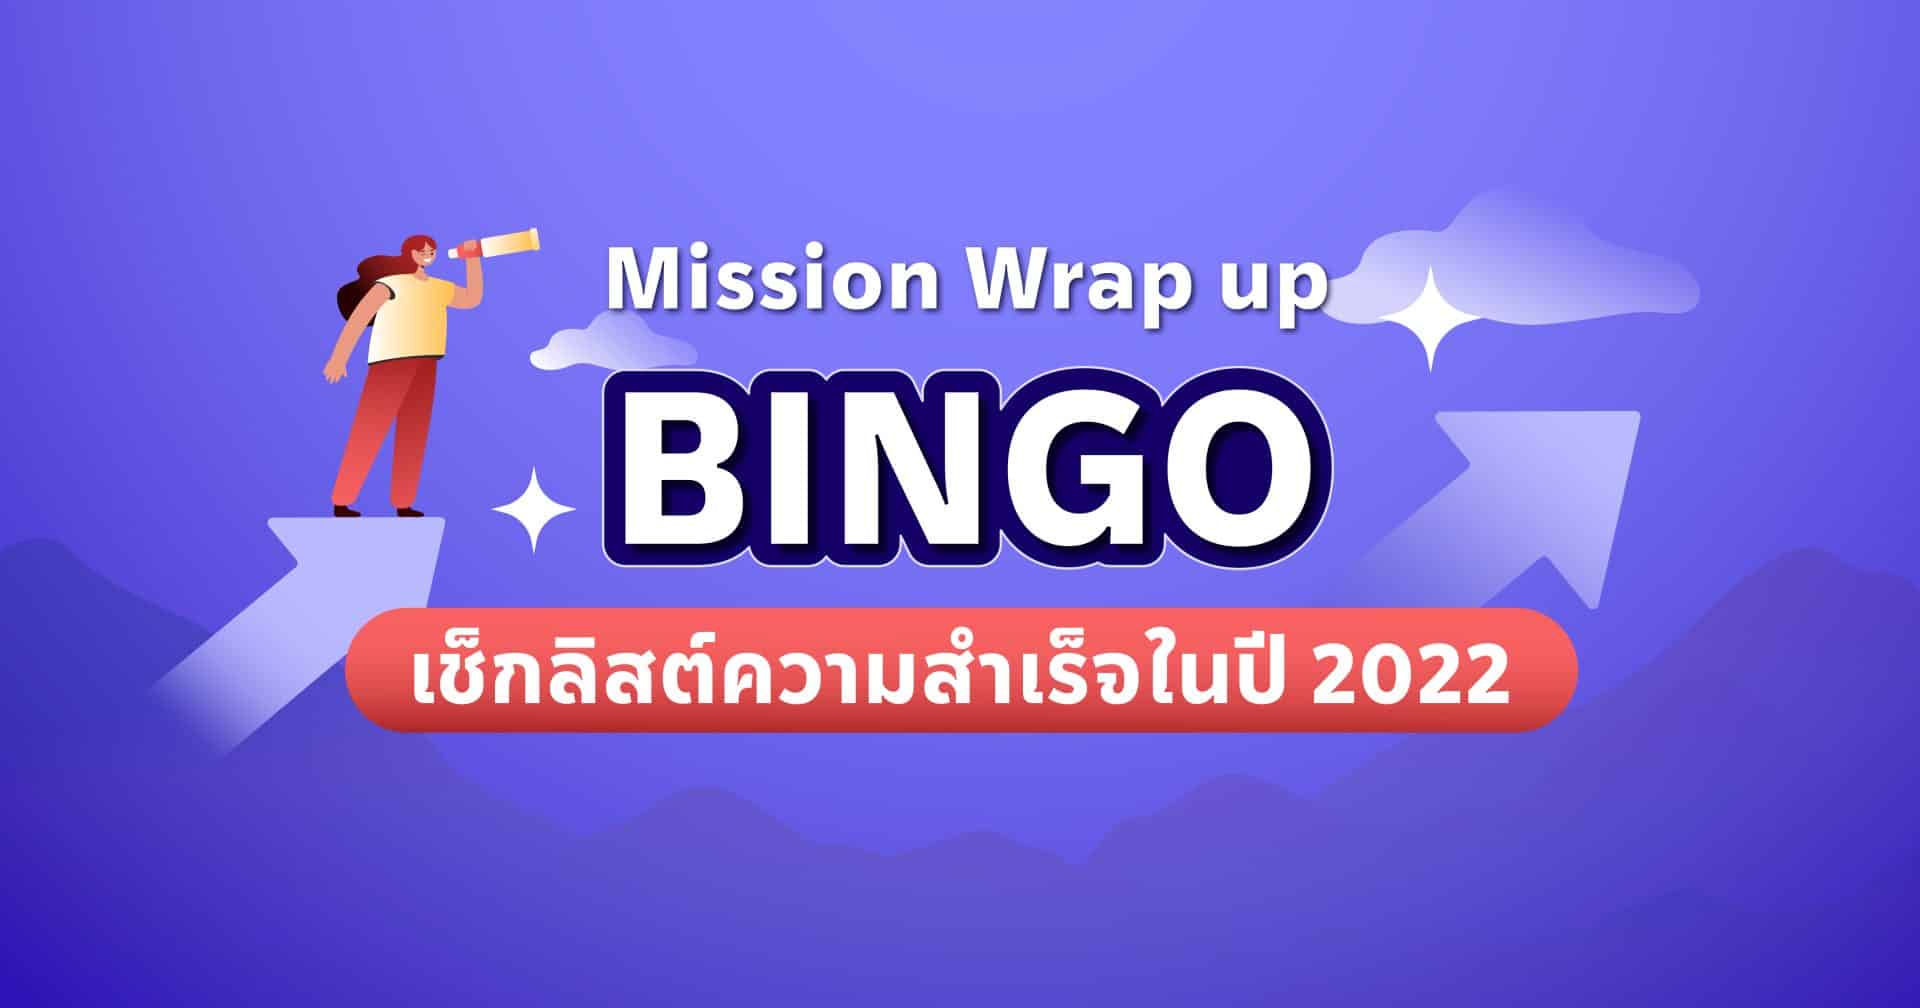 Mission Wrap-up Bingo เช็กลิสต์ความสำเร็จในปี 2022